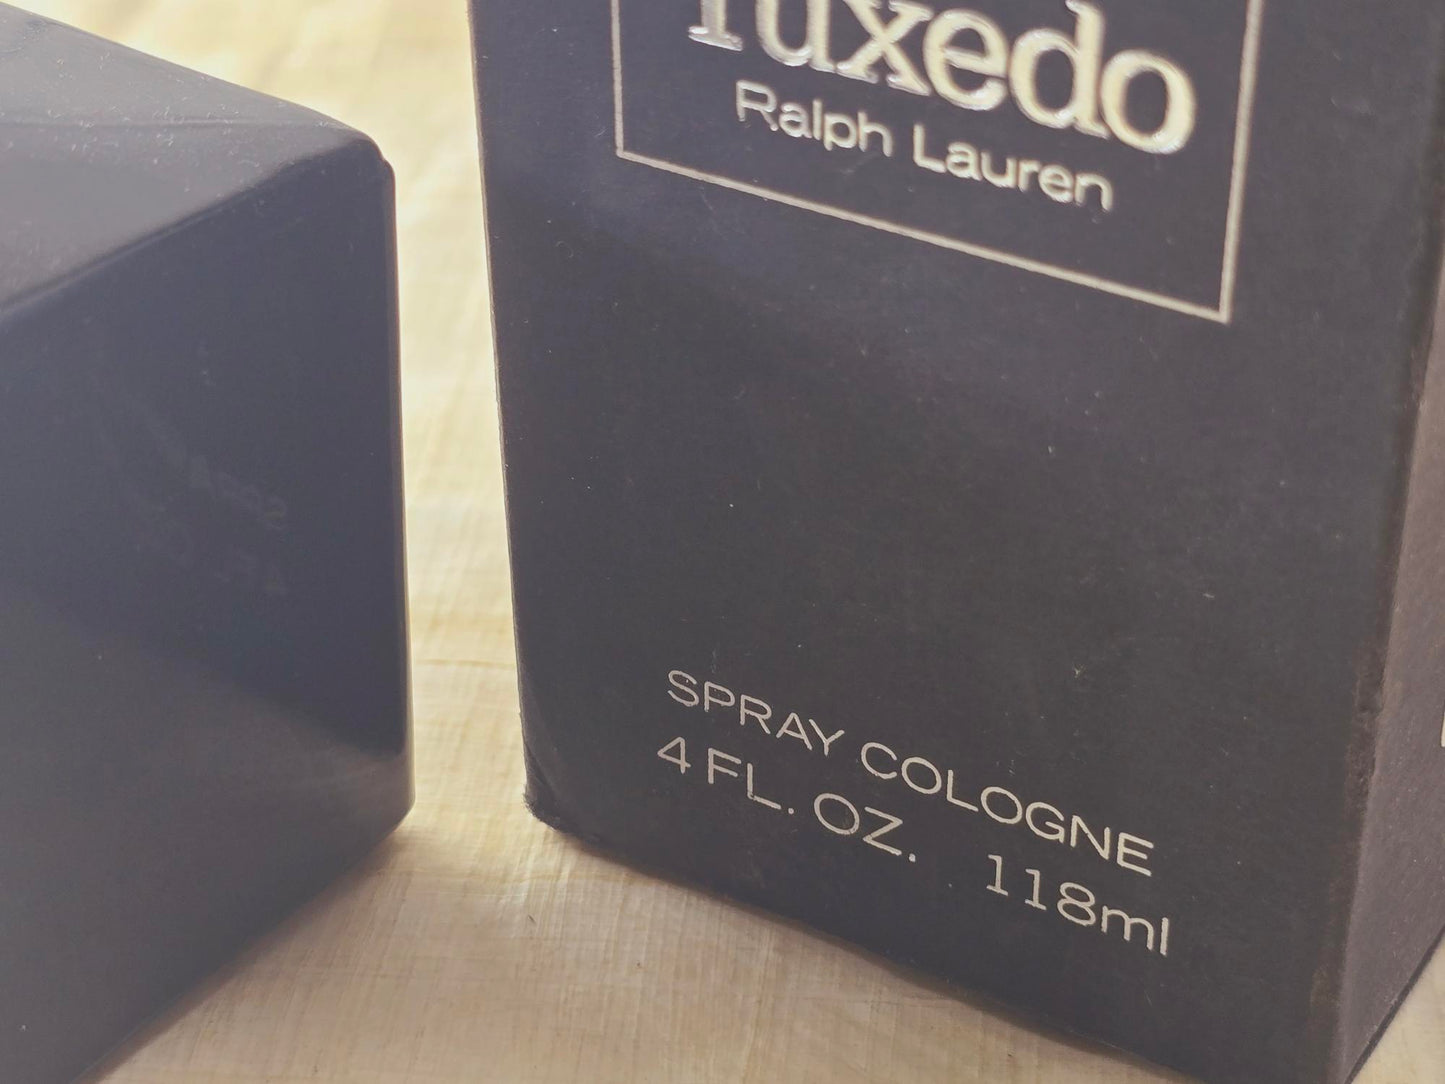 Tuxedo Ralph Lauren for women Cologne Spray 118 ml 4 oz, Rare, Vintage